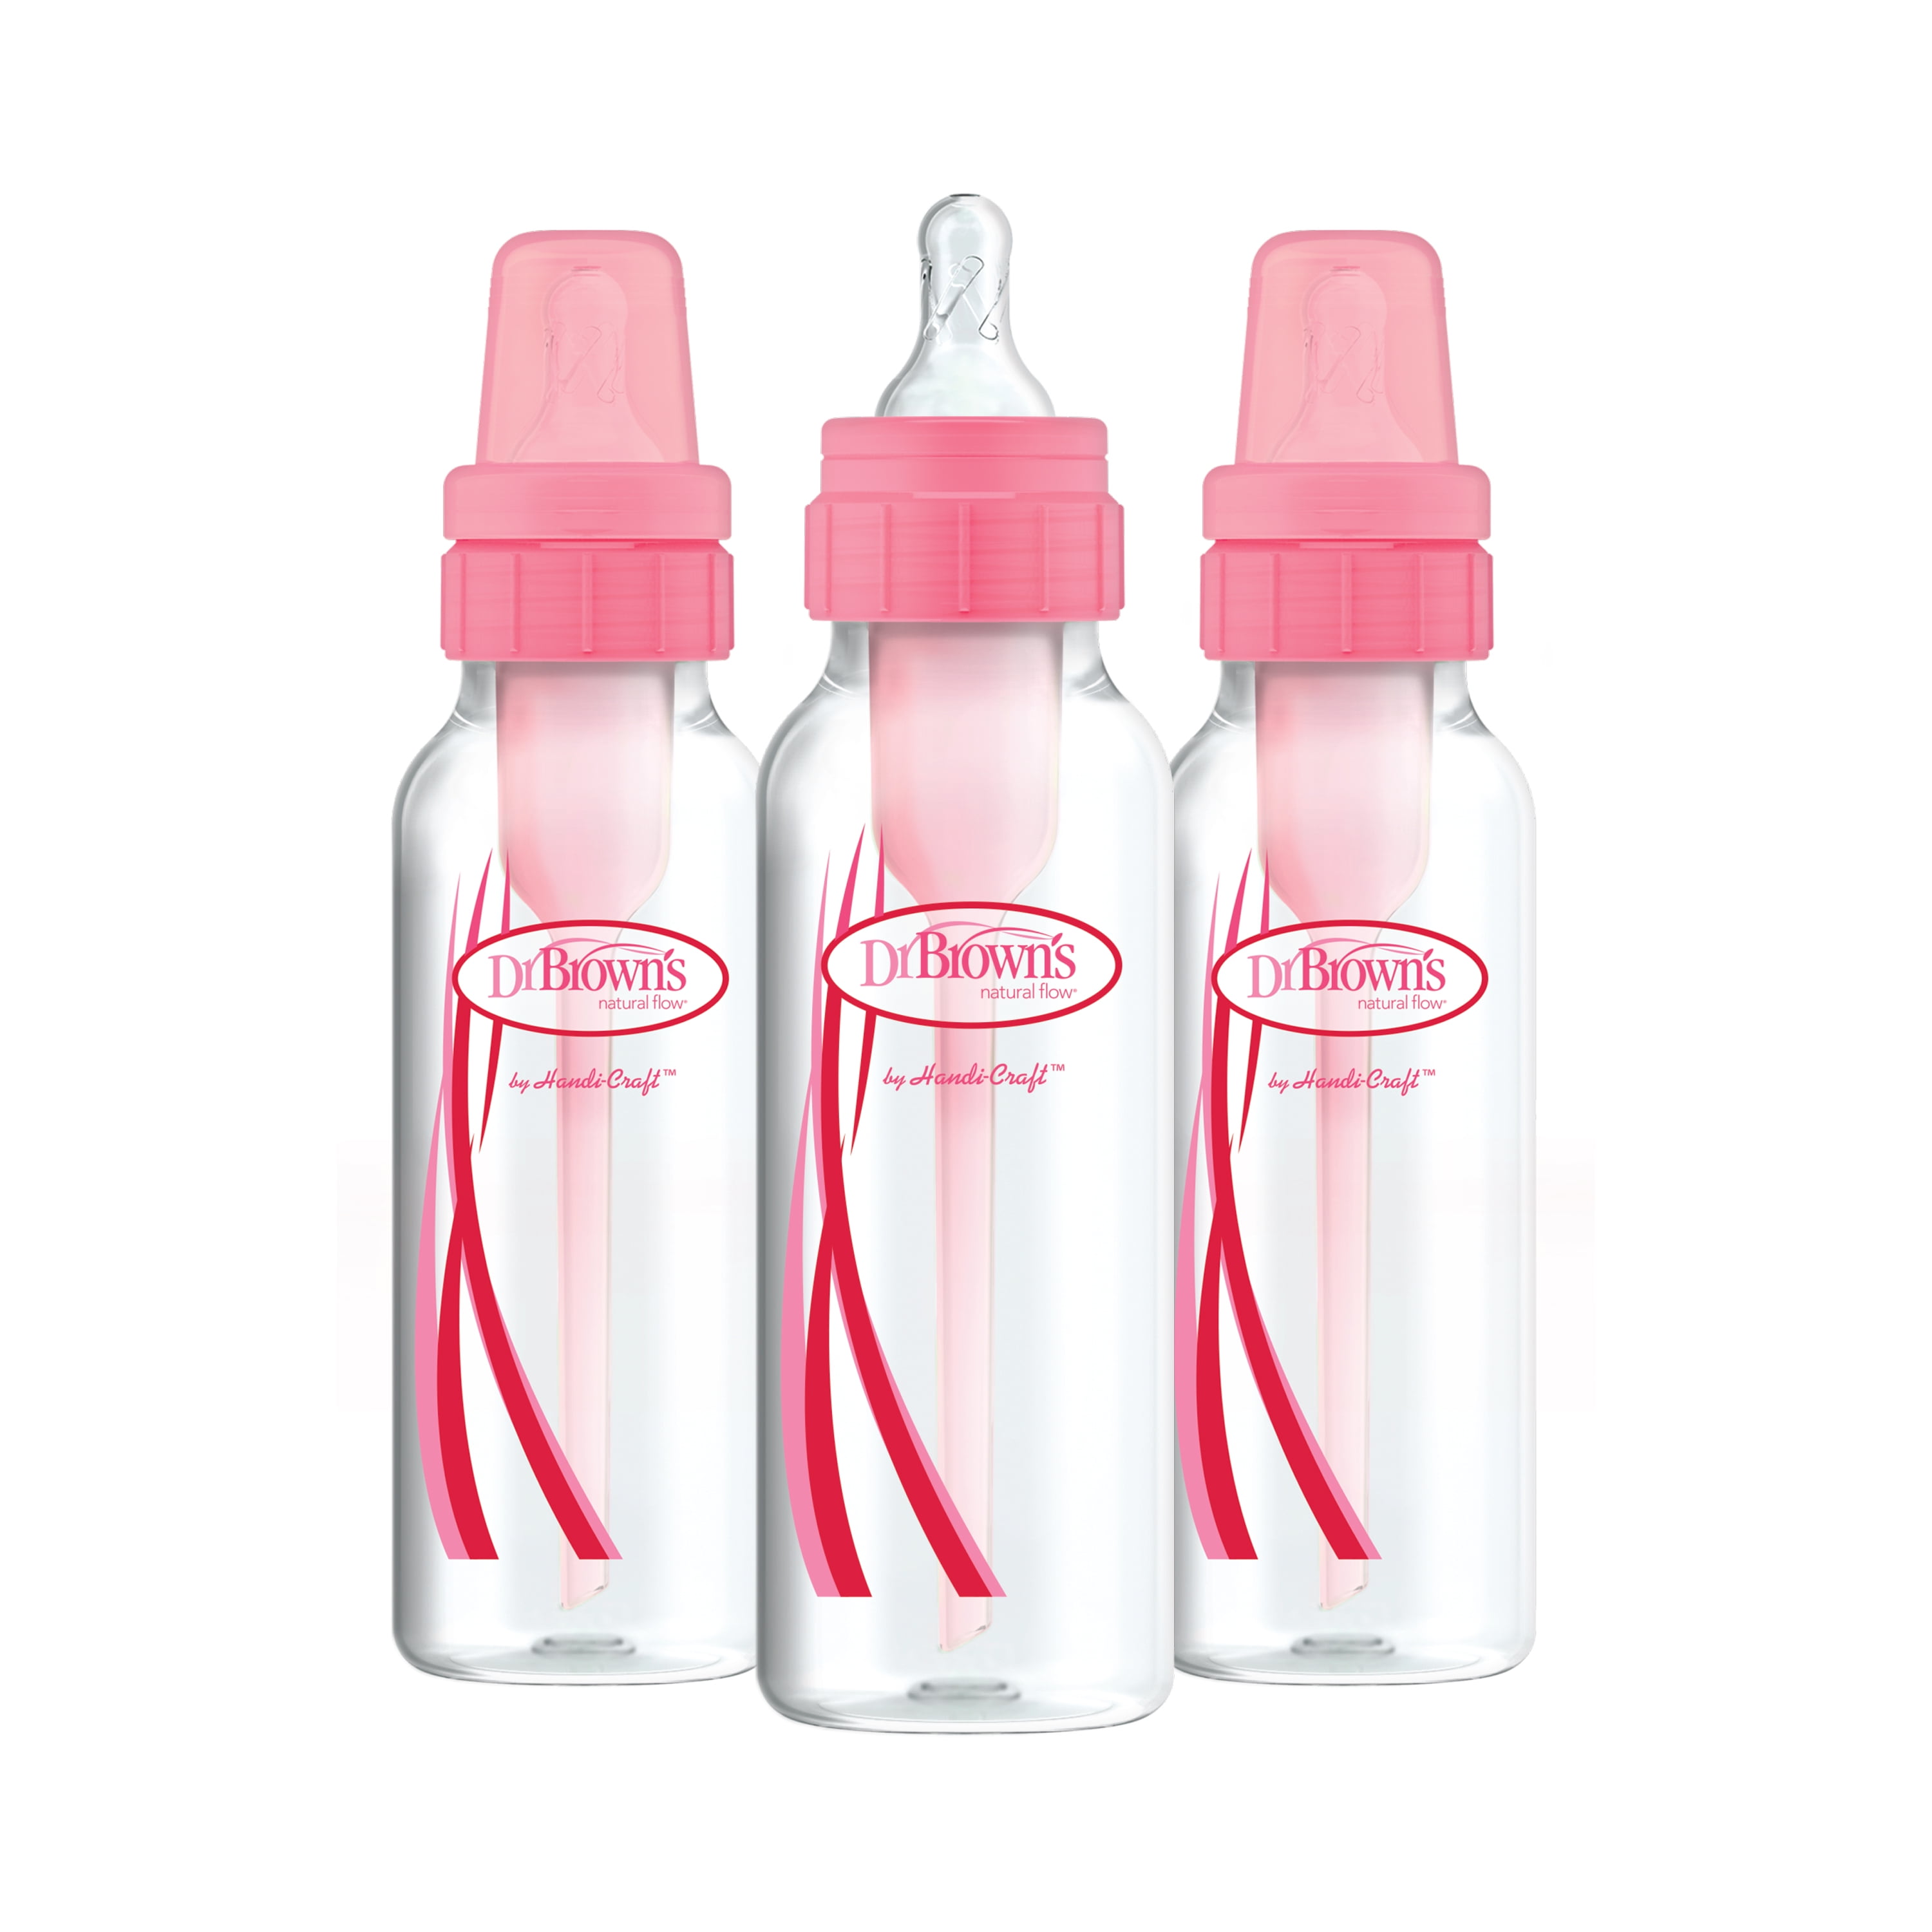 Natural Baby Bottle Pink Gift Set feeding bottles new Infant Newborn Cute Girl 